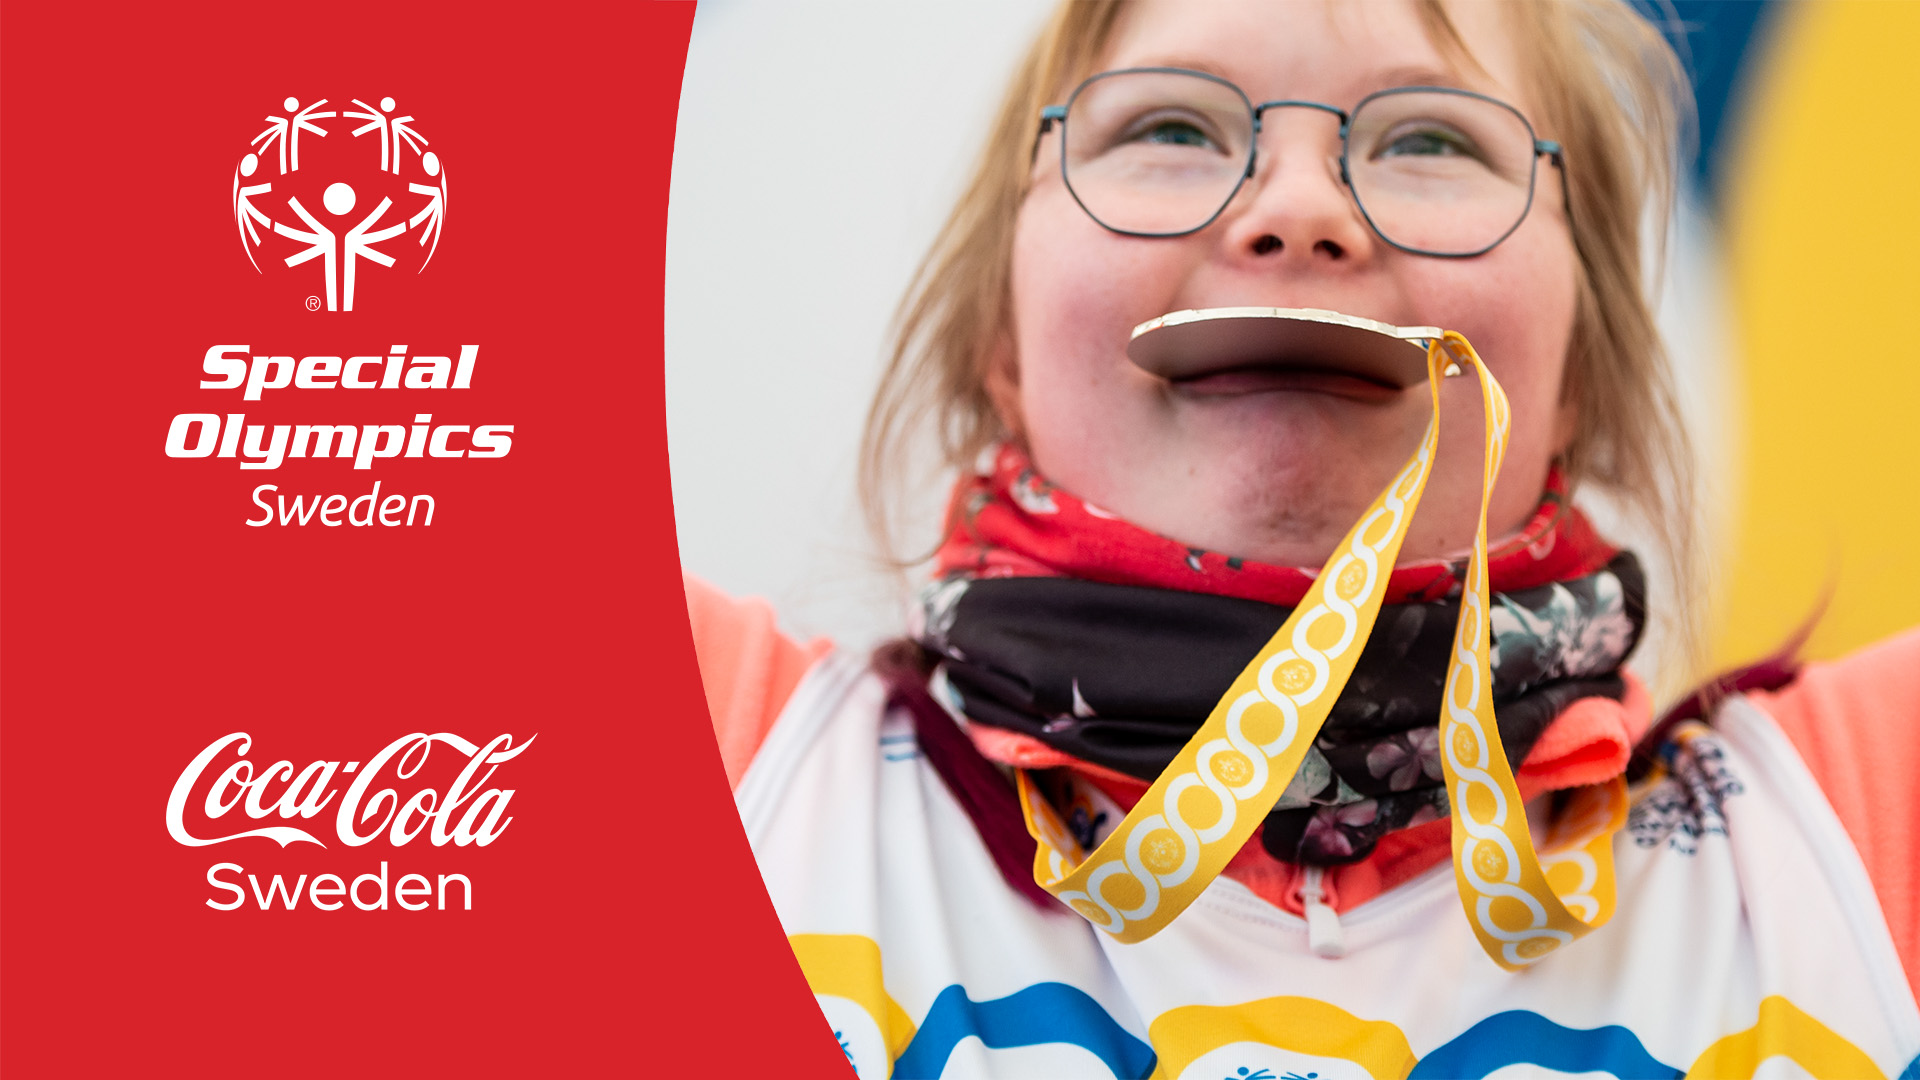 Bilden är ett montage. Till vänster syns logotyperna för Special Olympics Sverige och Coca-Cola Sverige. Till höger syns en närbild på en tjej med downs syndrom som biter i en medalj.